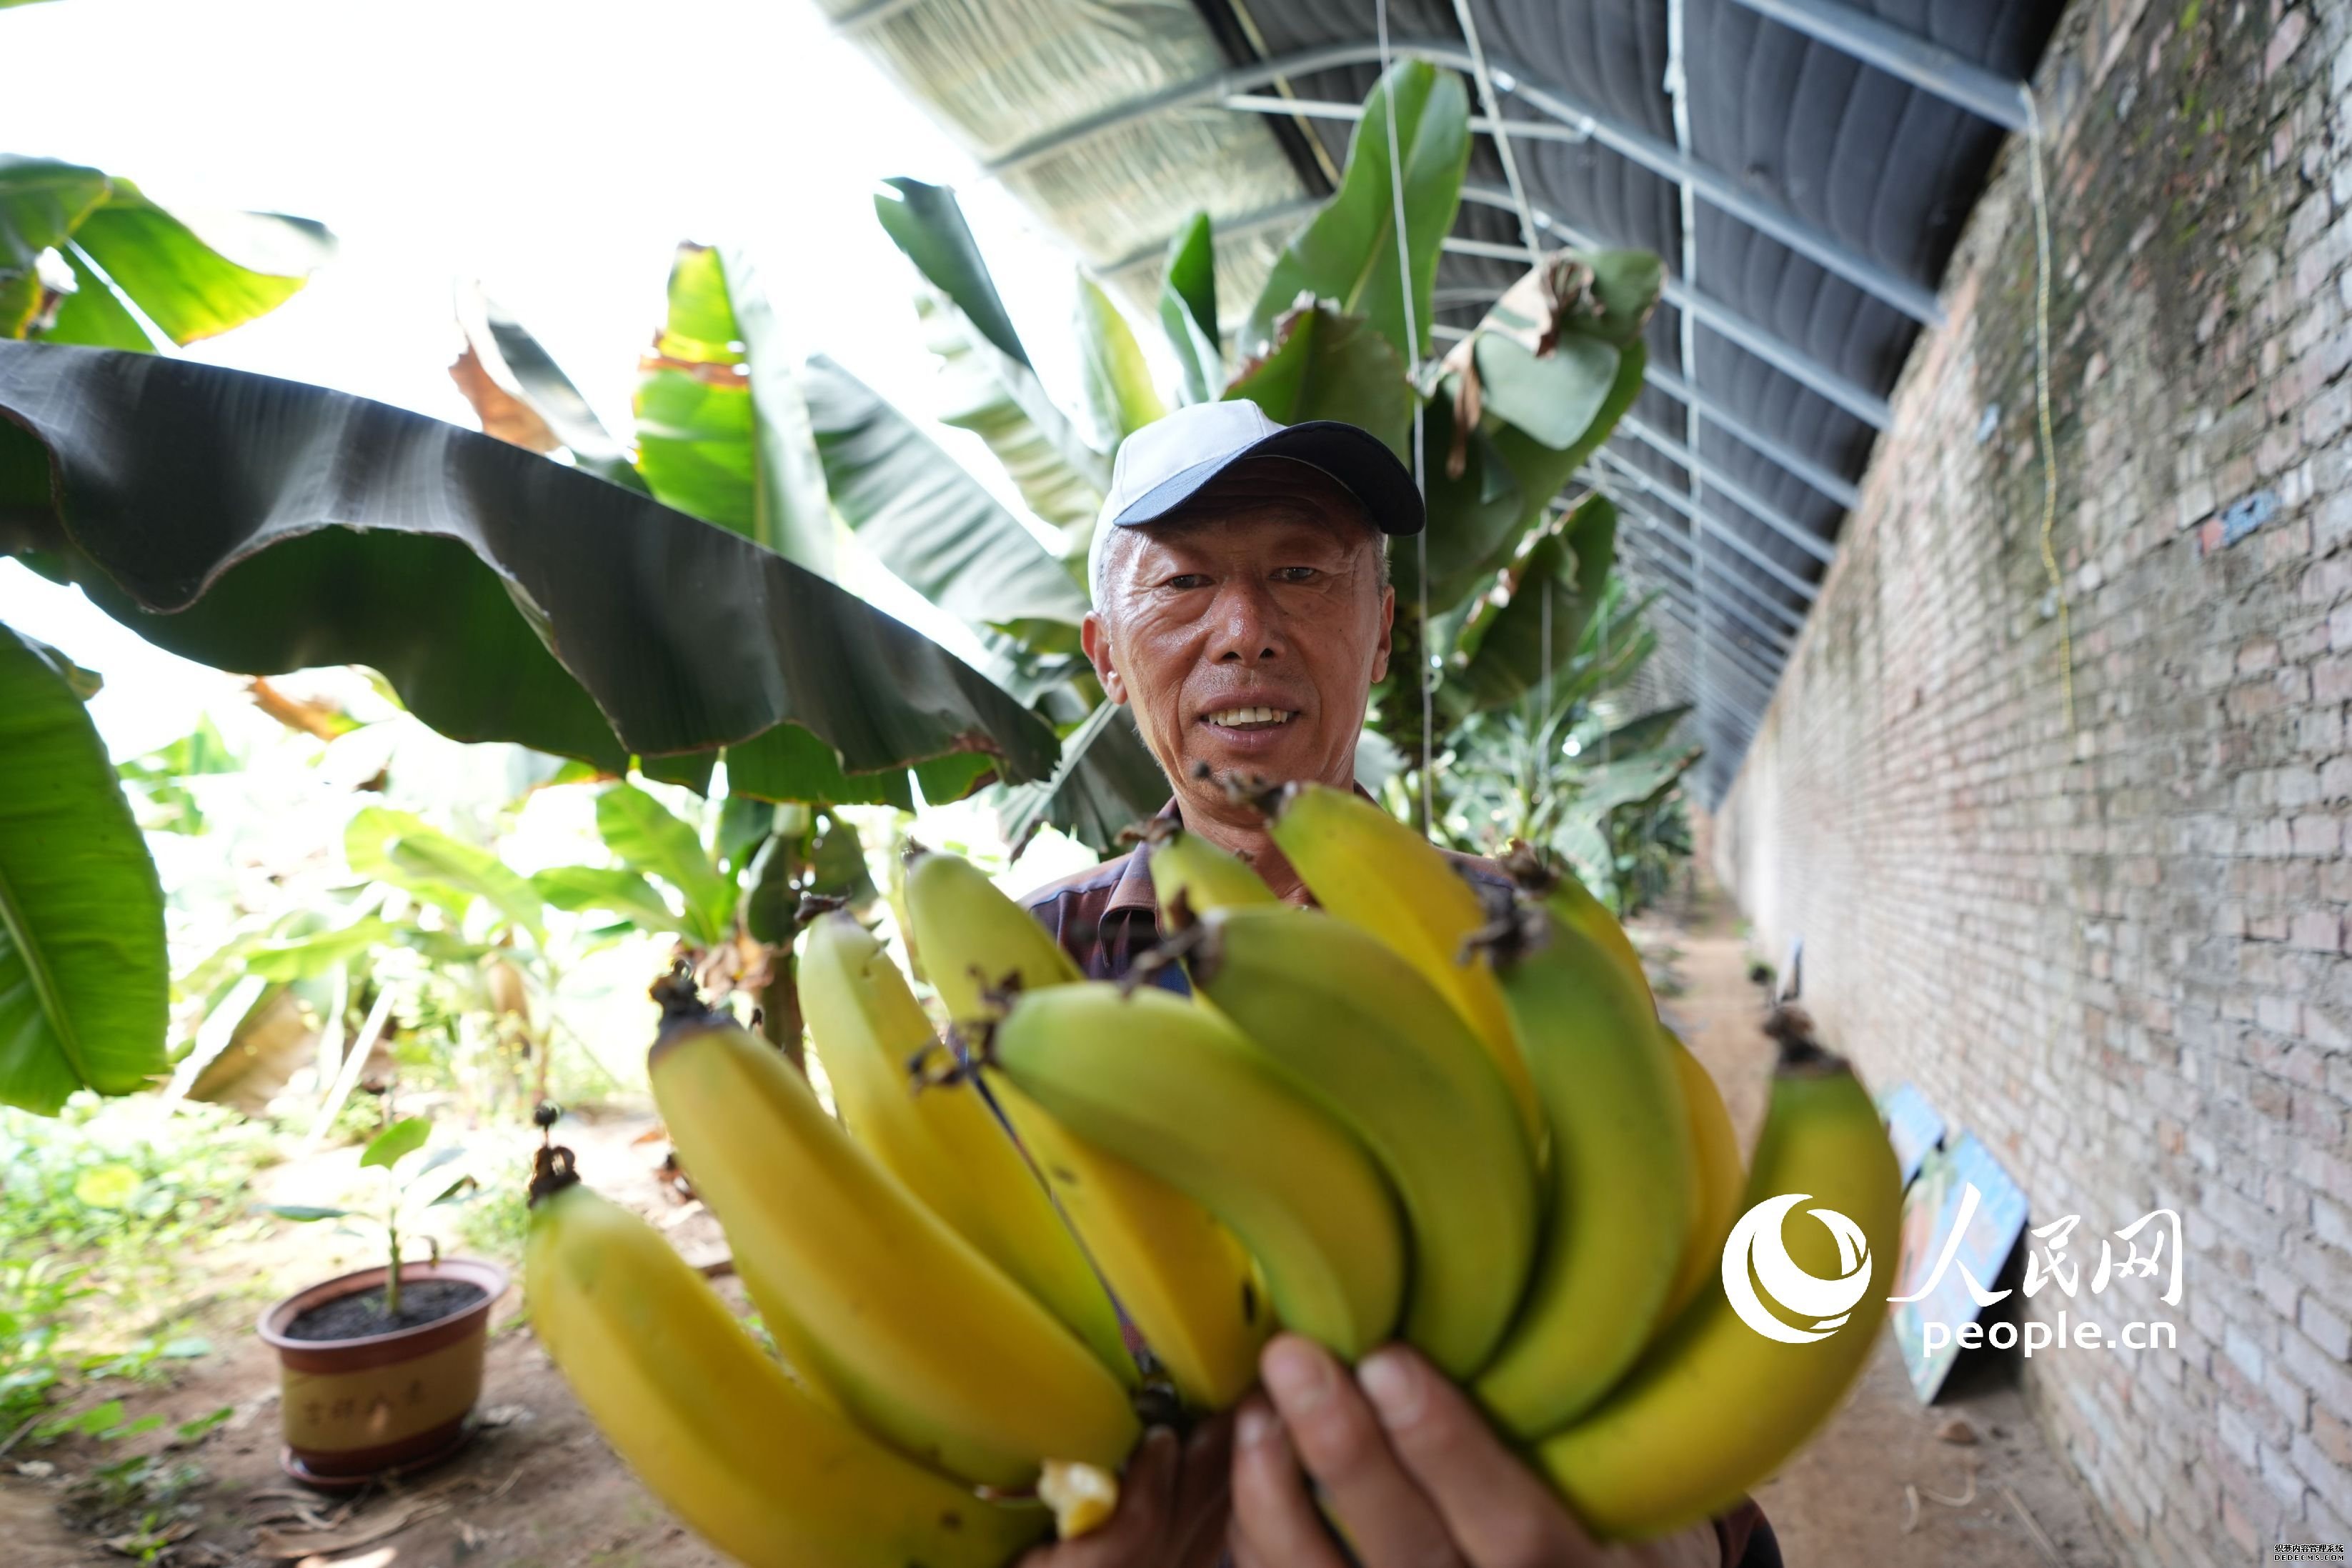 种植户展示已经成熟的香蕉。 人民网记者 王天乐摄